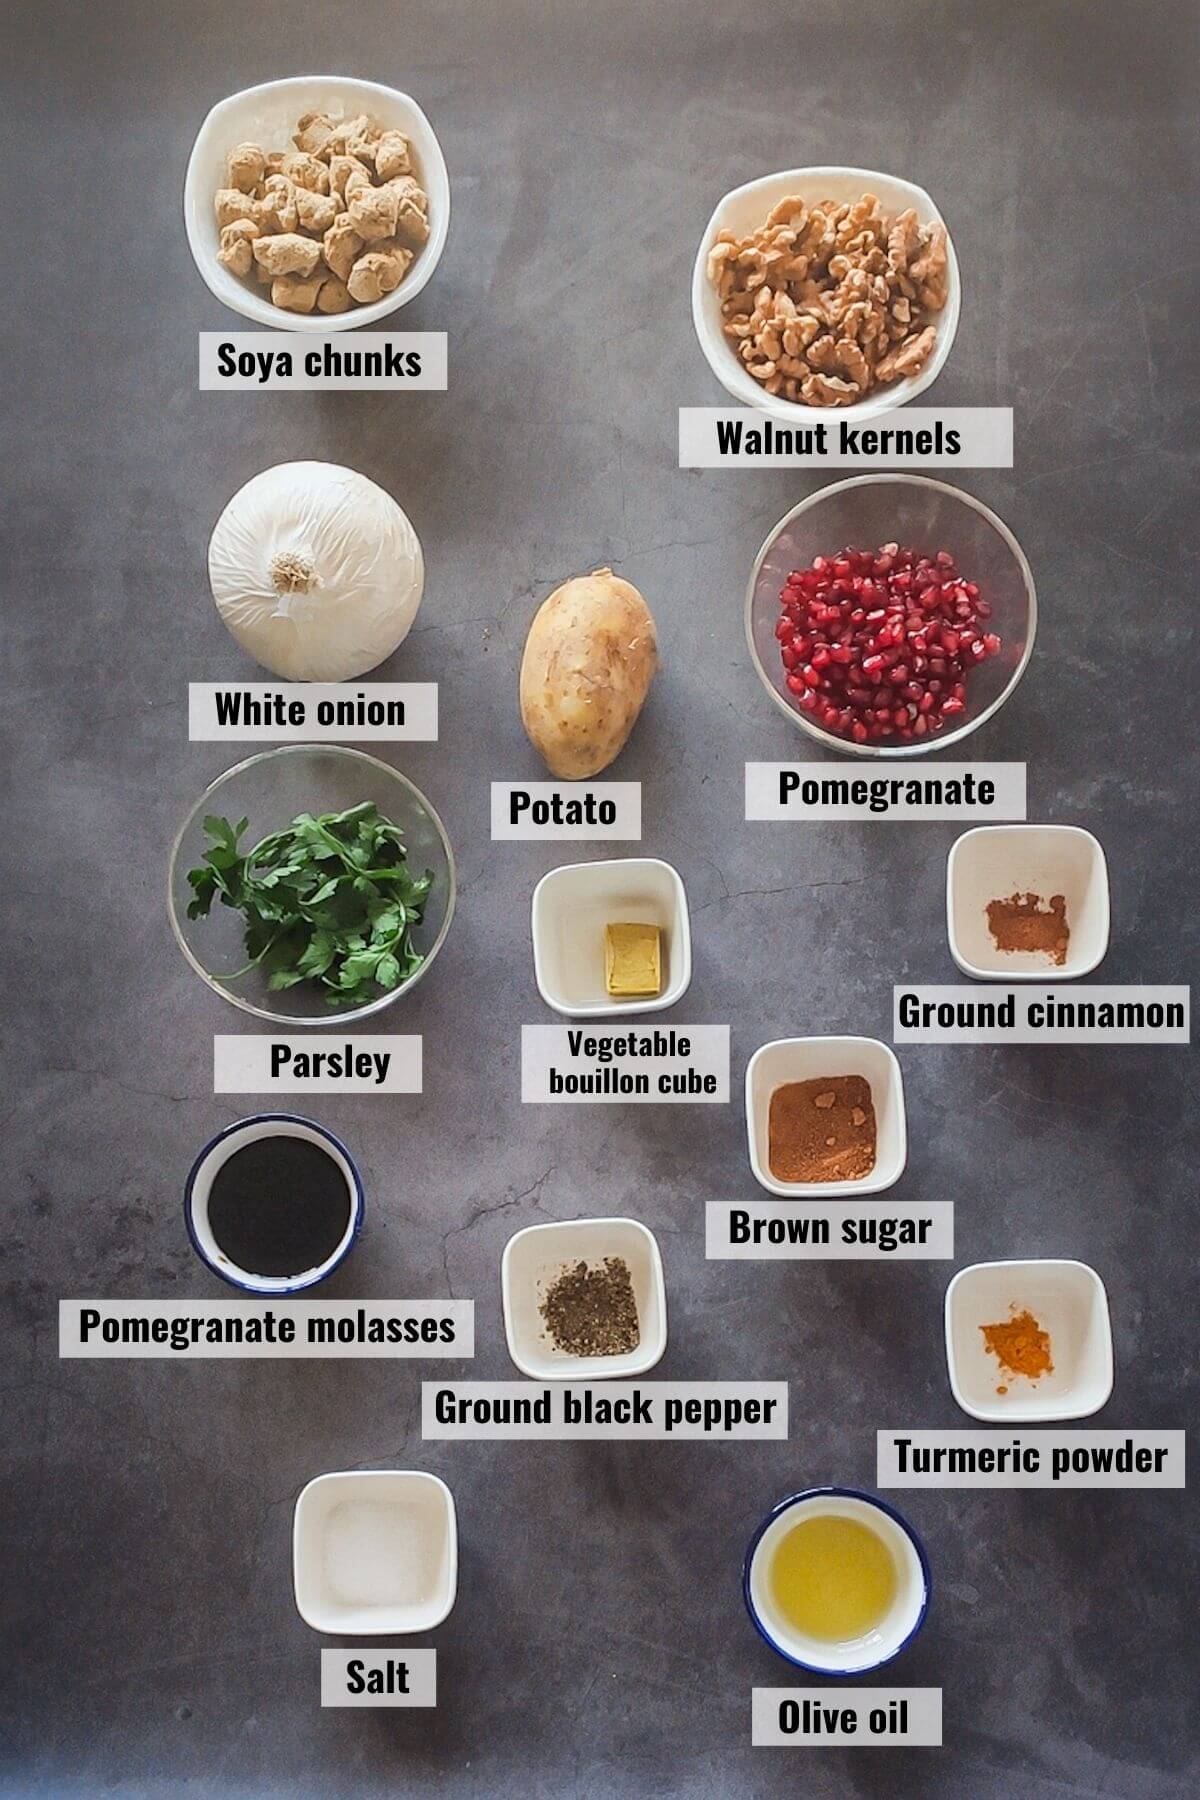 Ingredients of vegan fesenjan labelled.